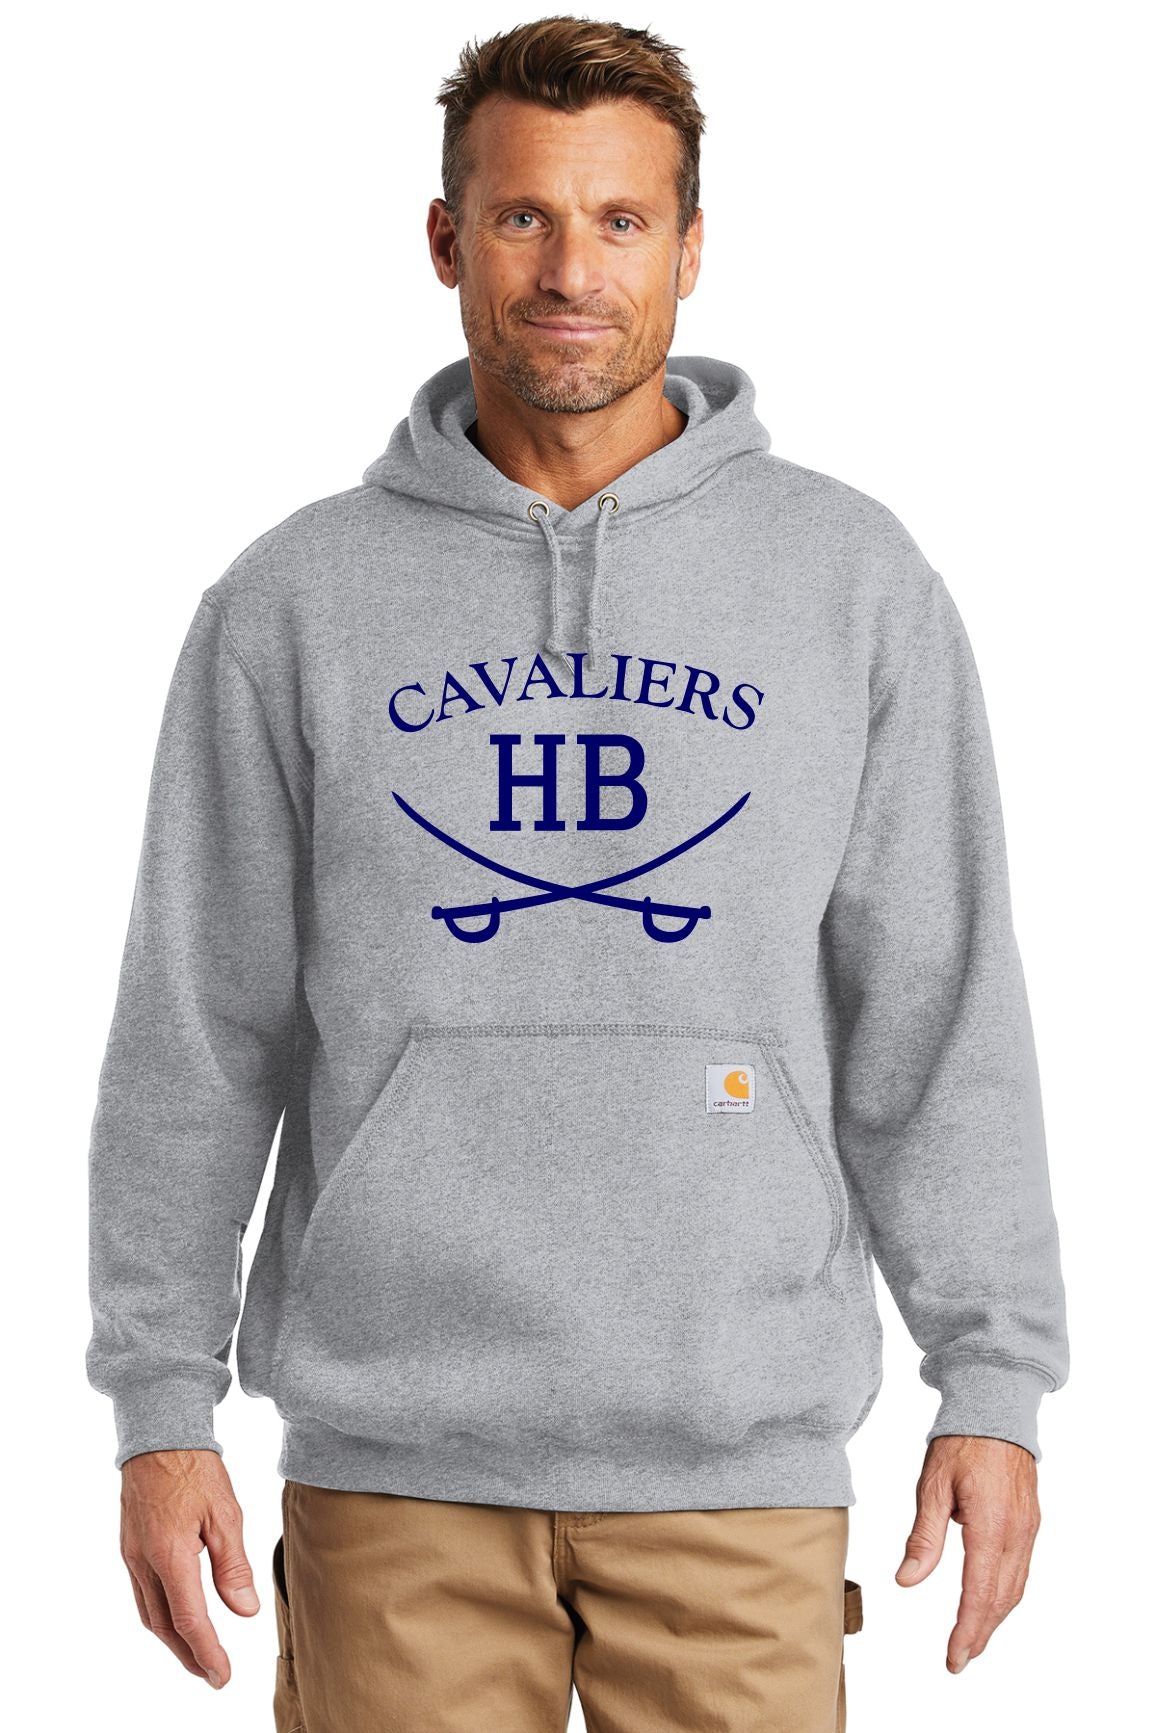 Cavaliers Carhartt Hoodie